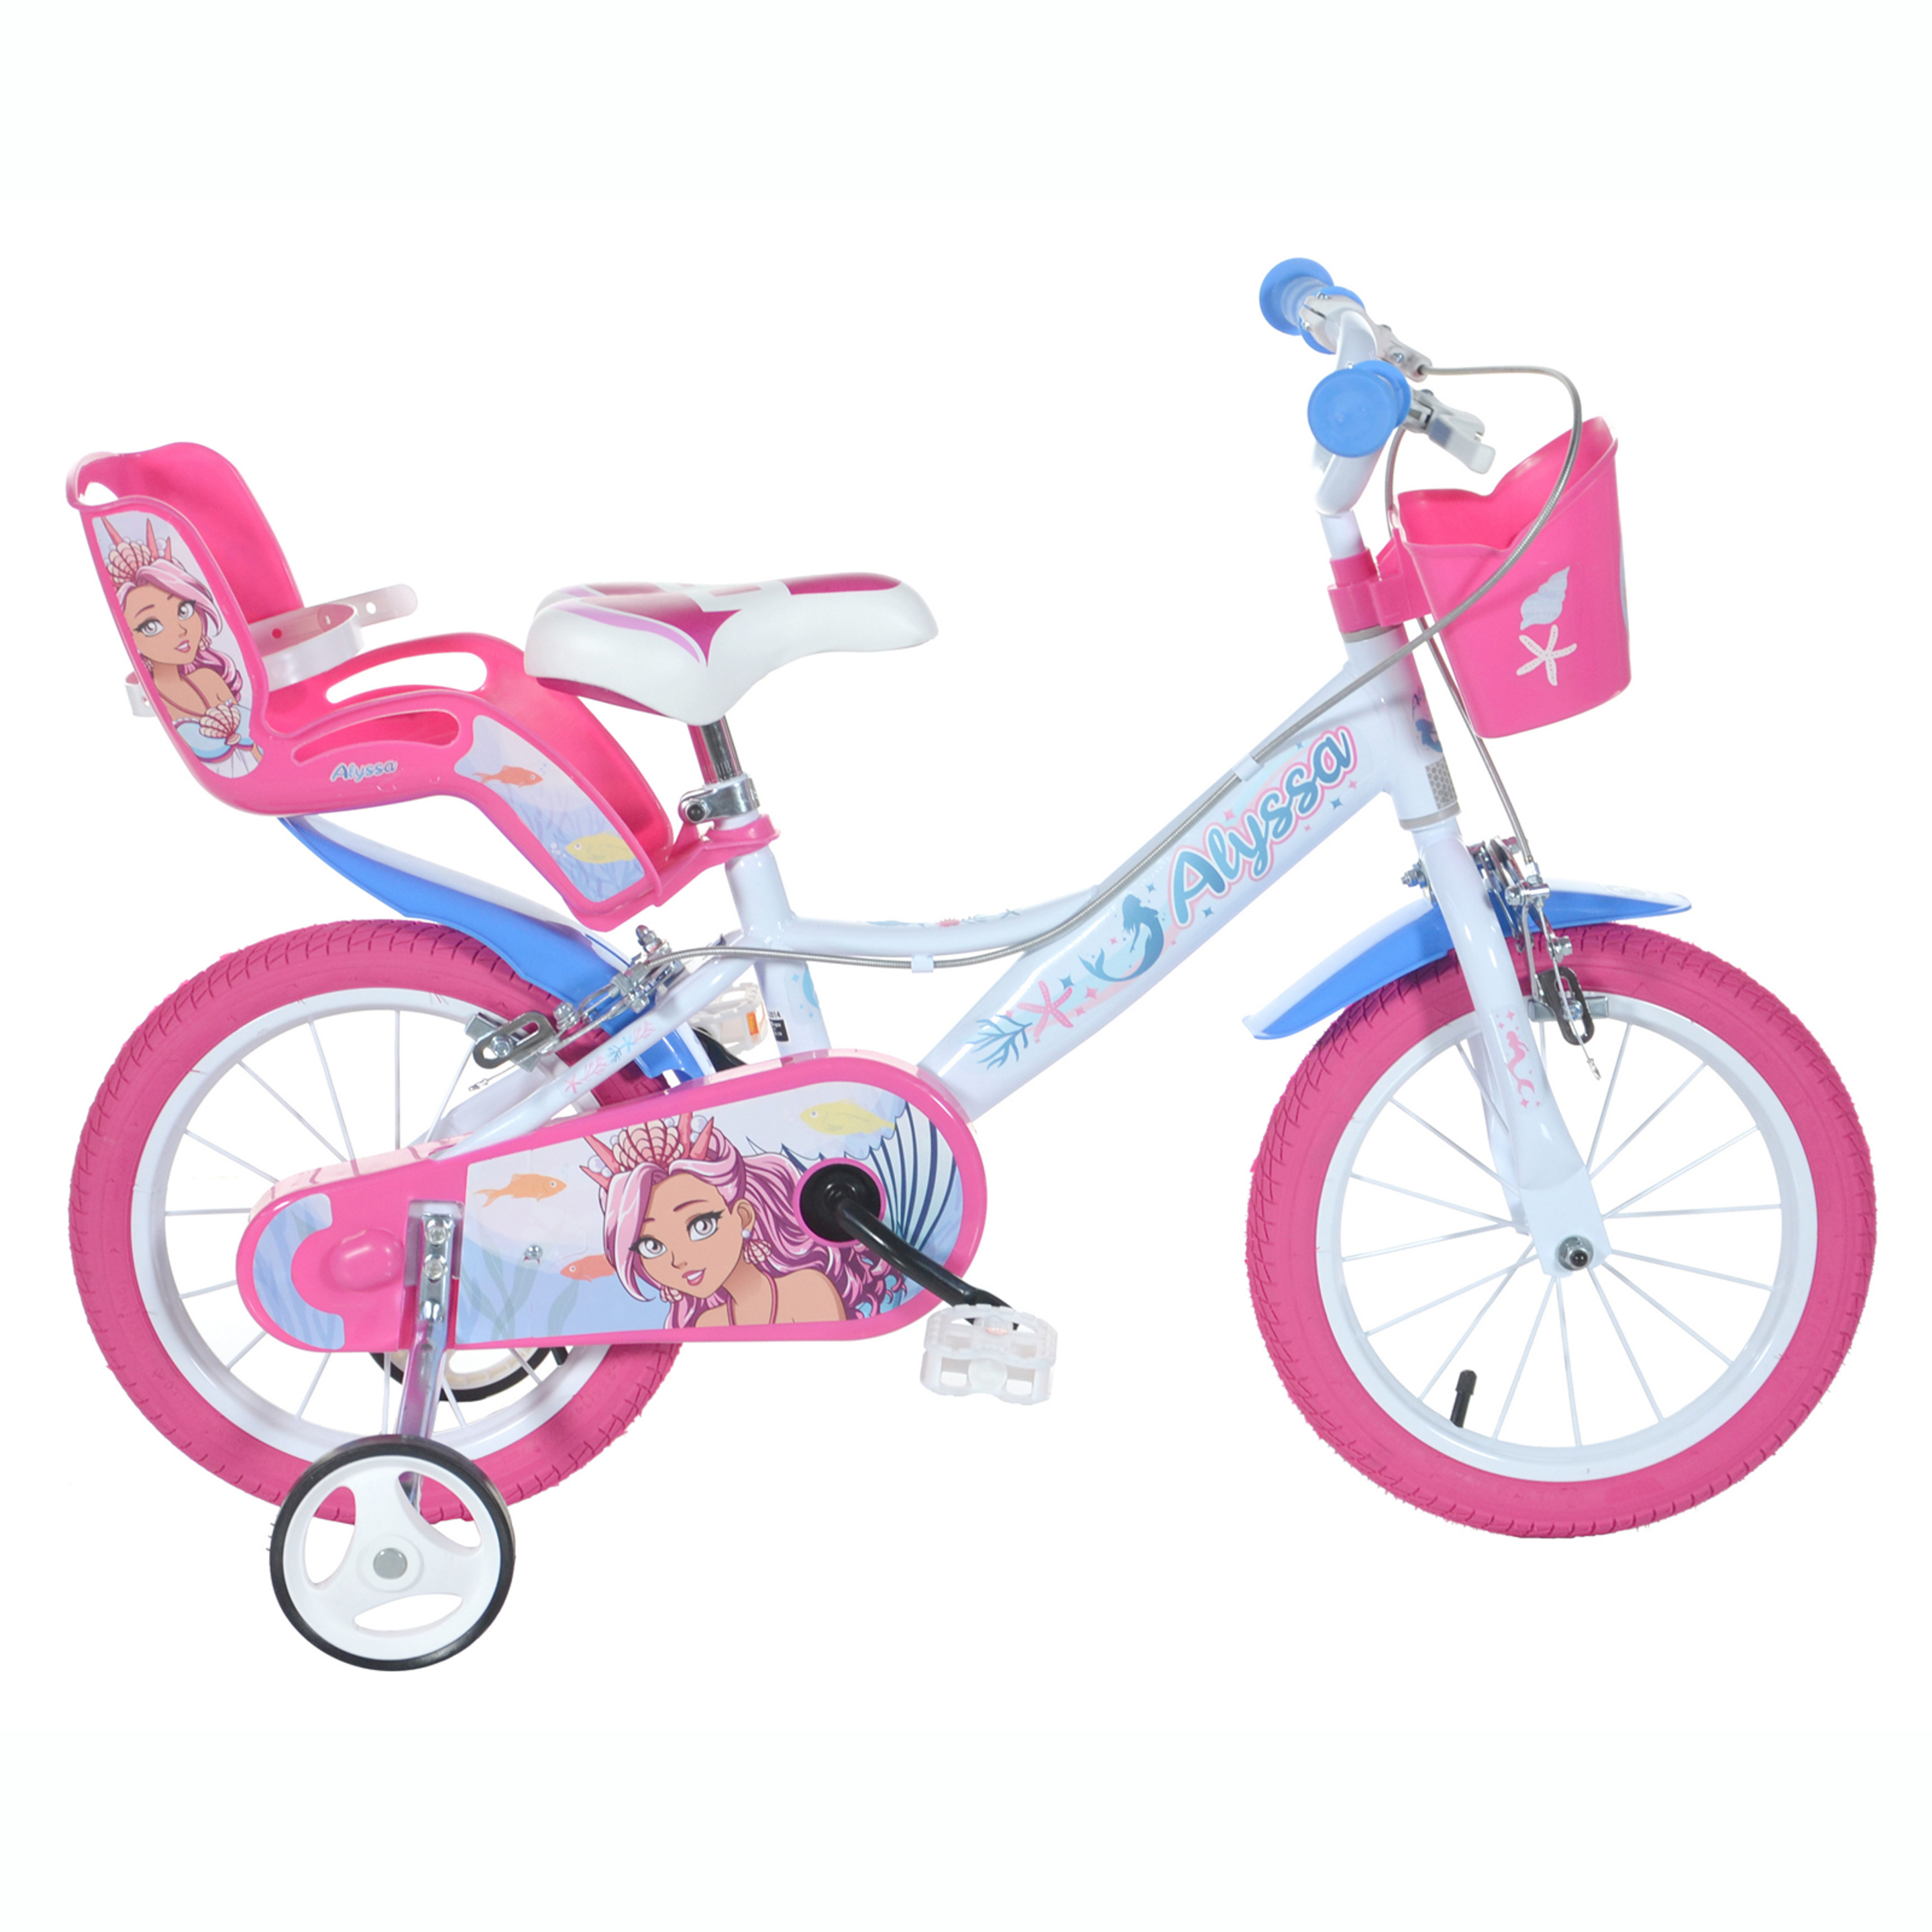 Bicicleta 16 Pulgadas Sirena 5-7 Años - blanco-rosa - 